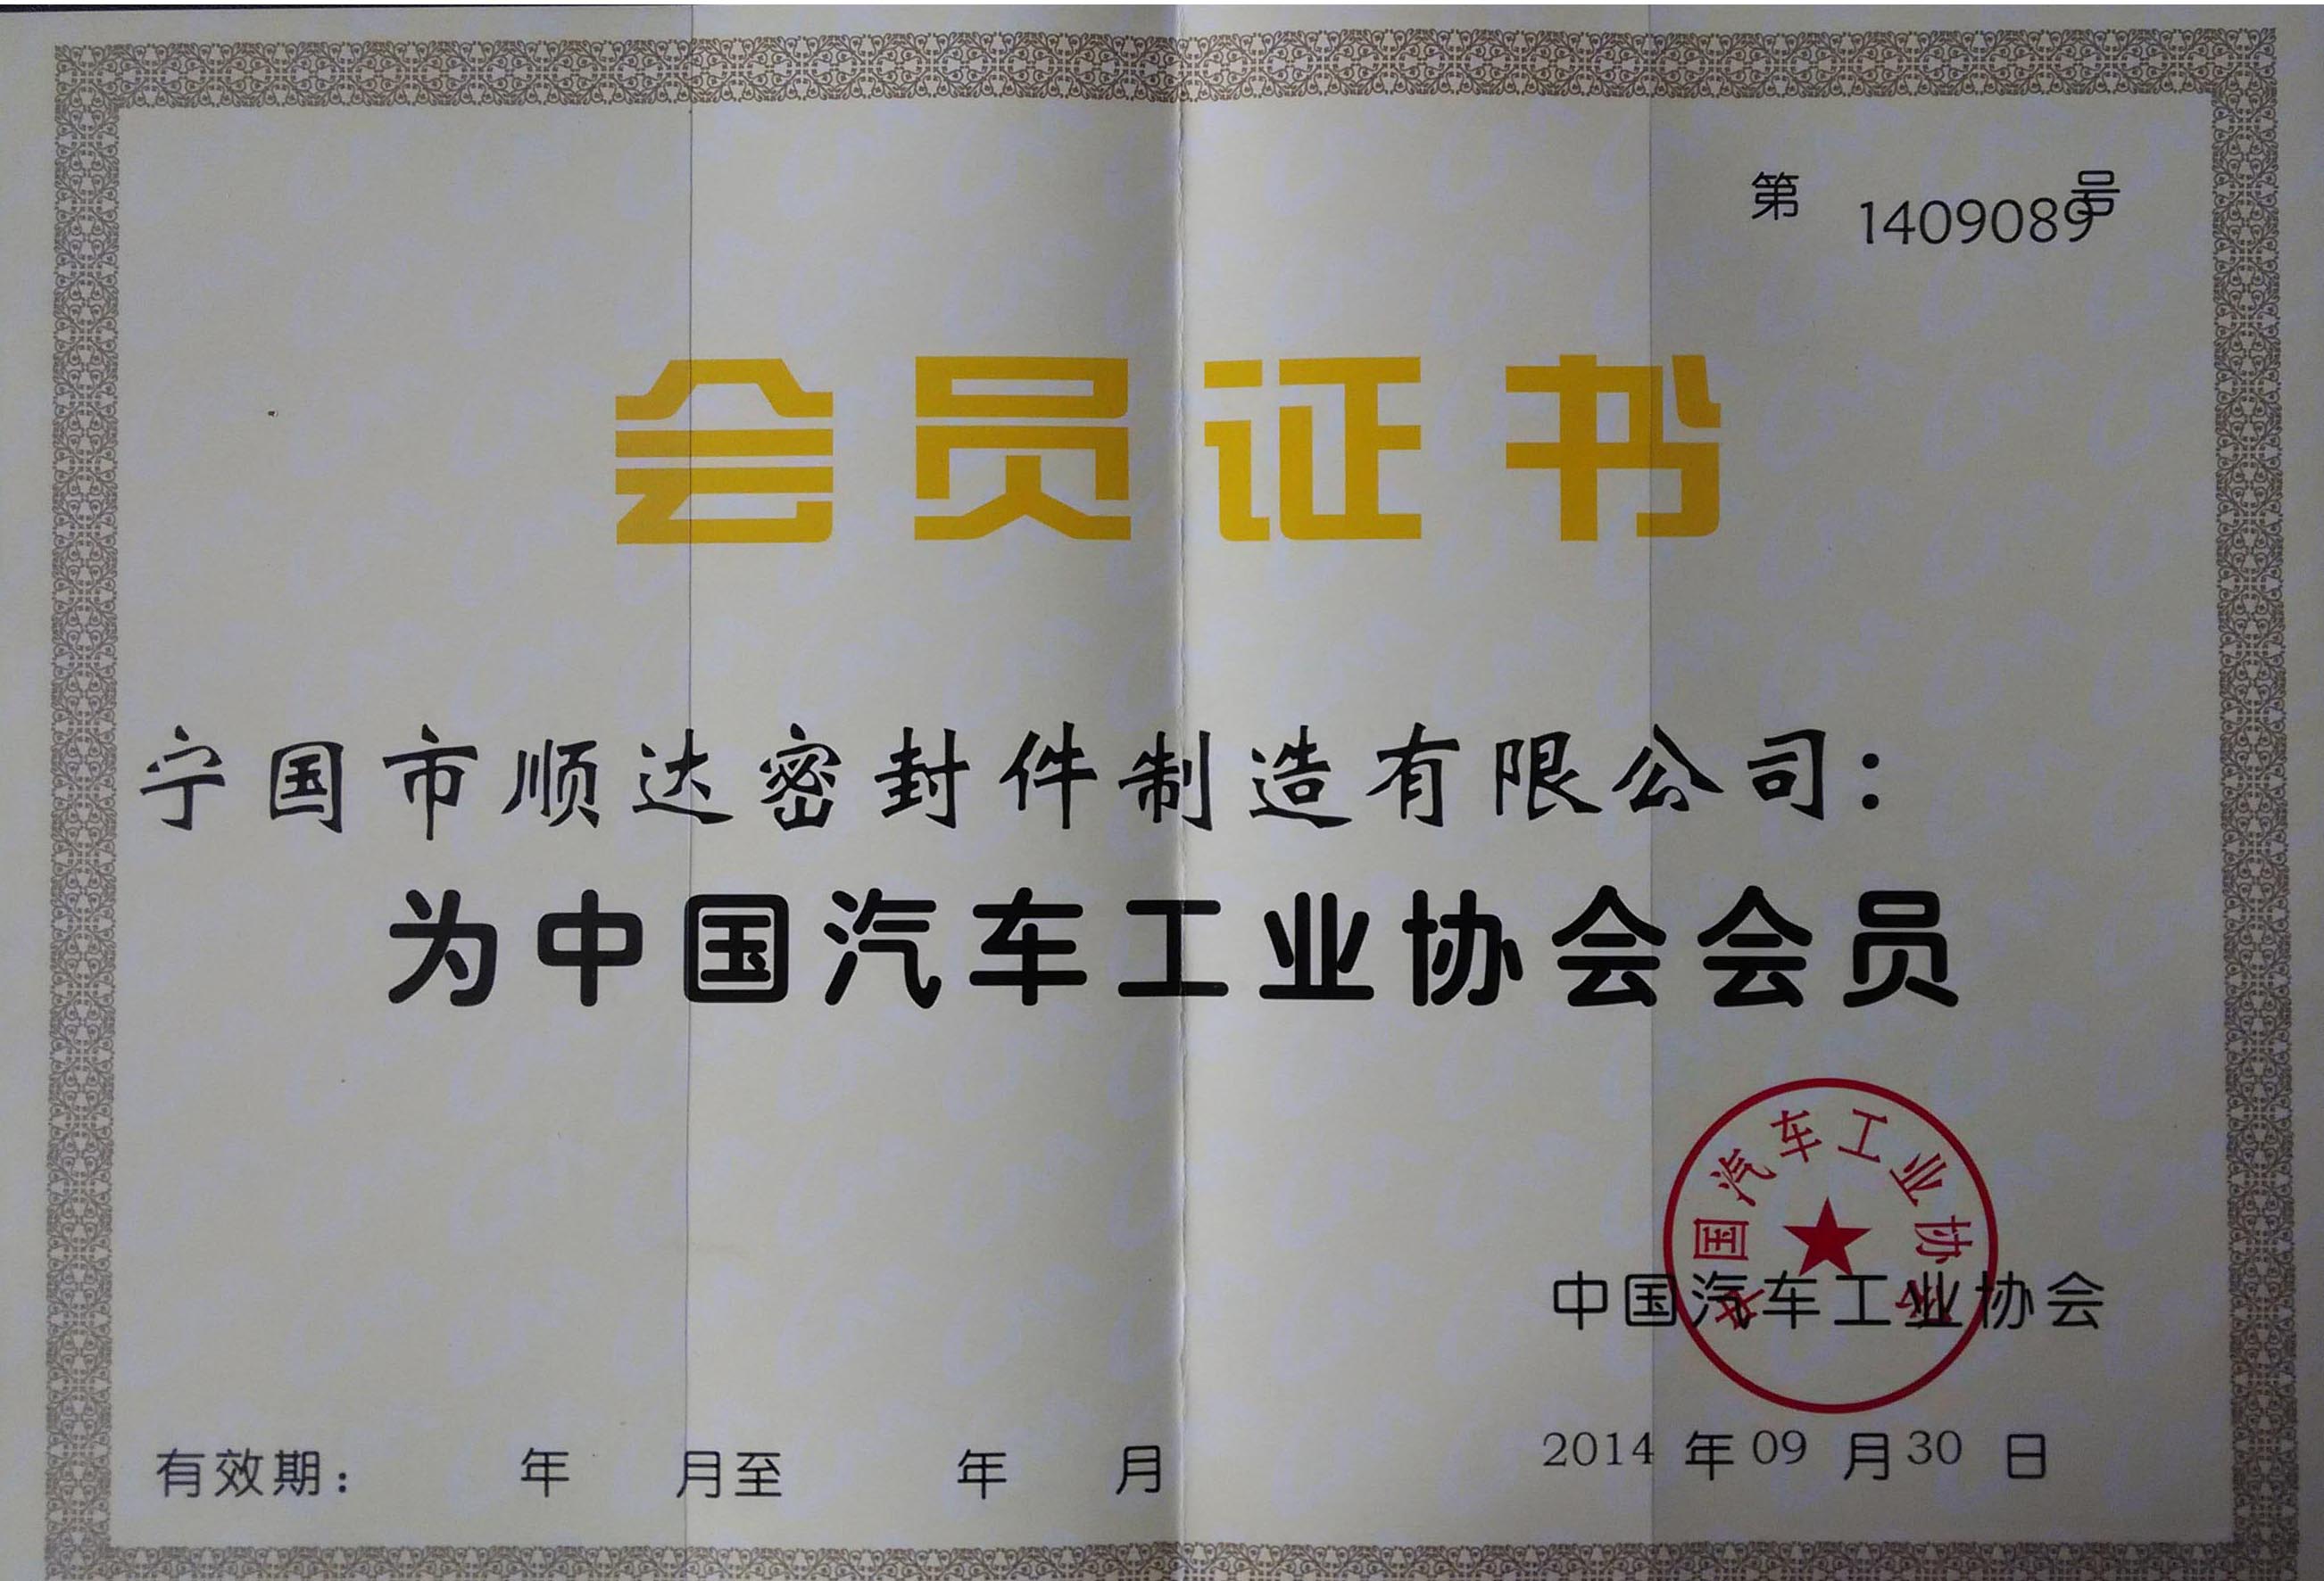 宁国市顺达密封件制造有限公司正式加入中国汽车工业协会！